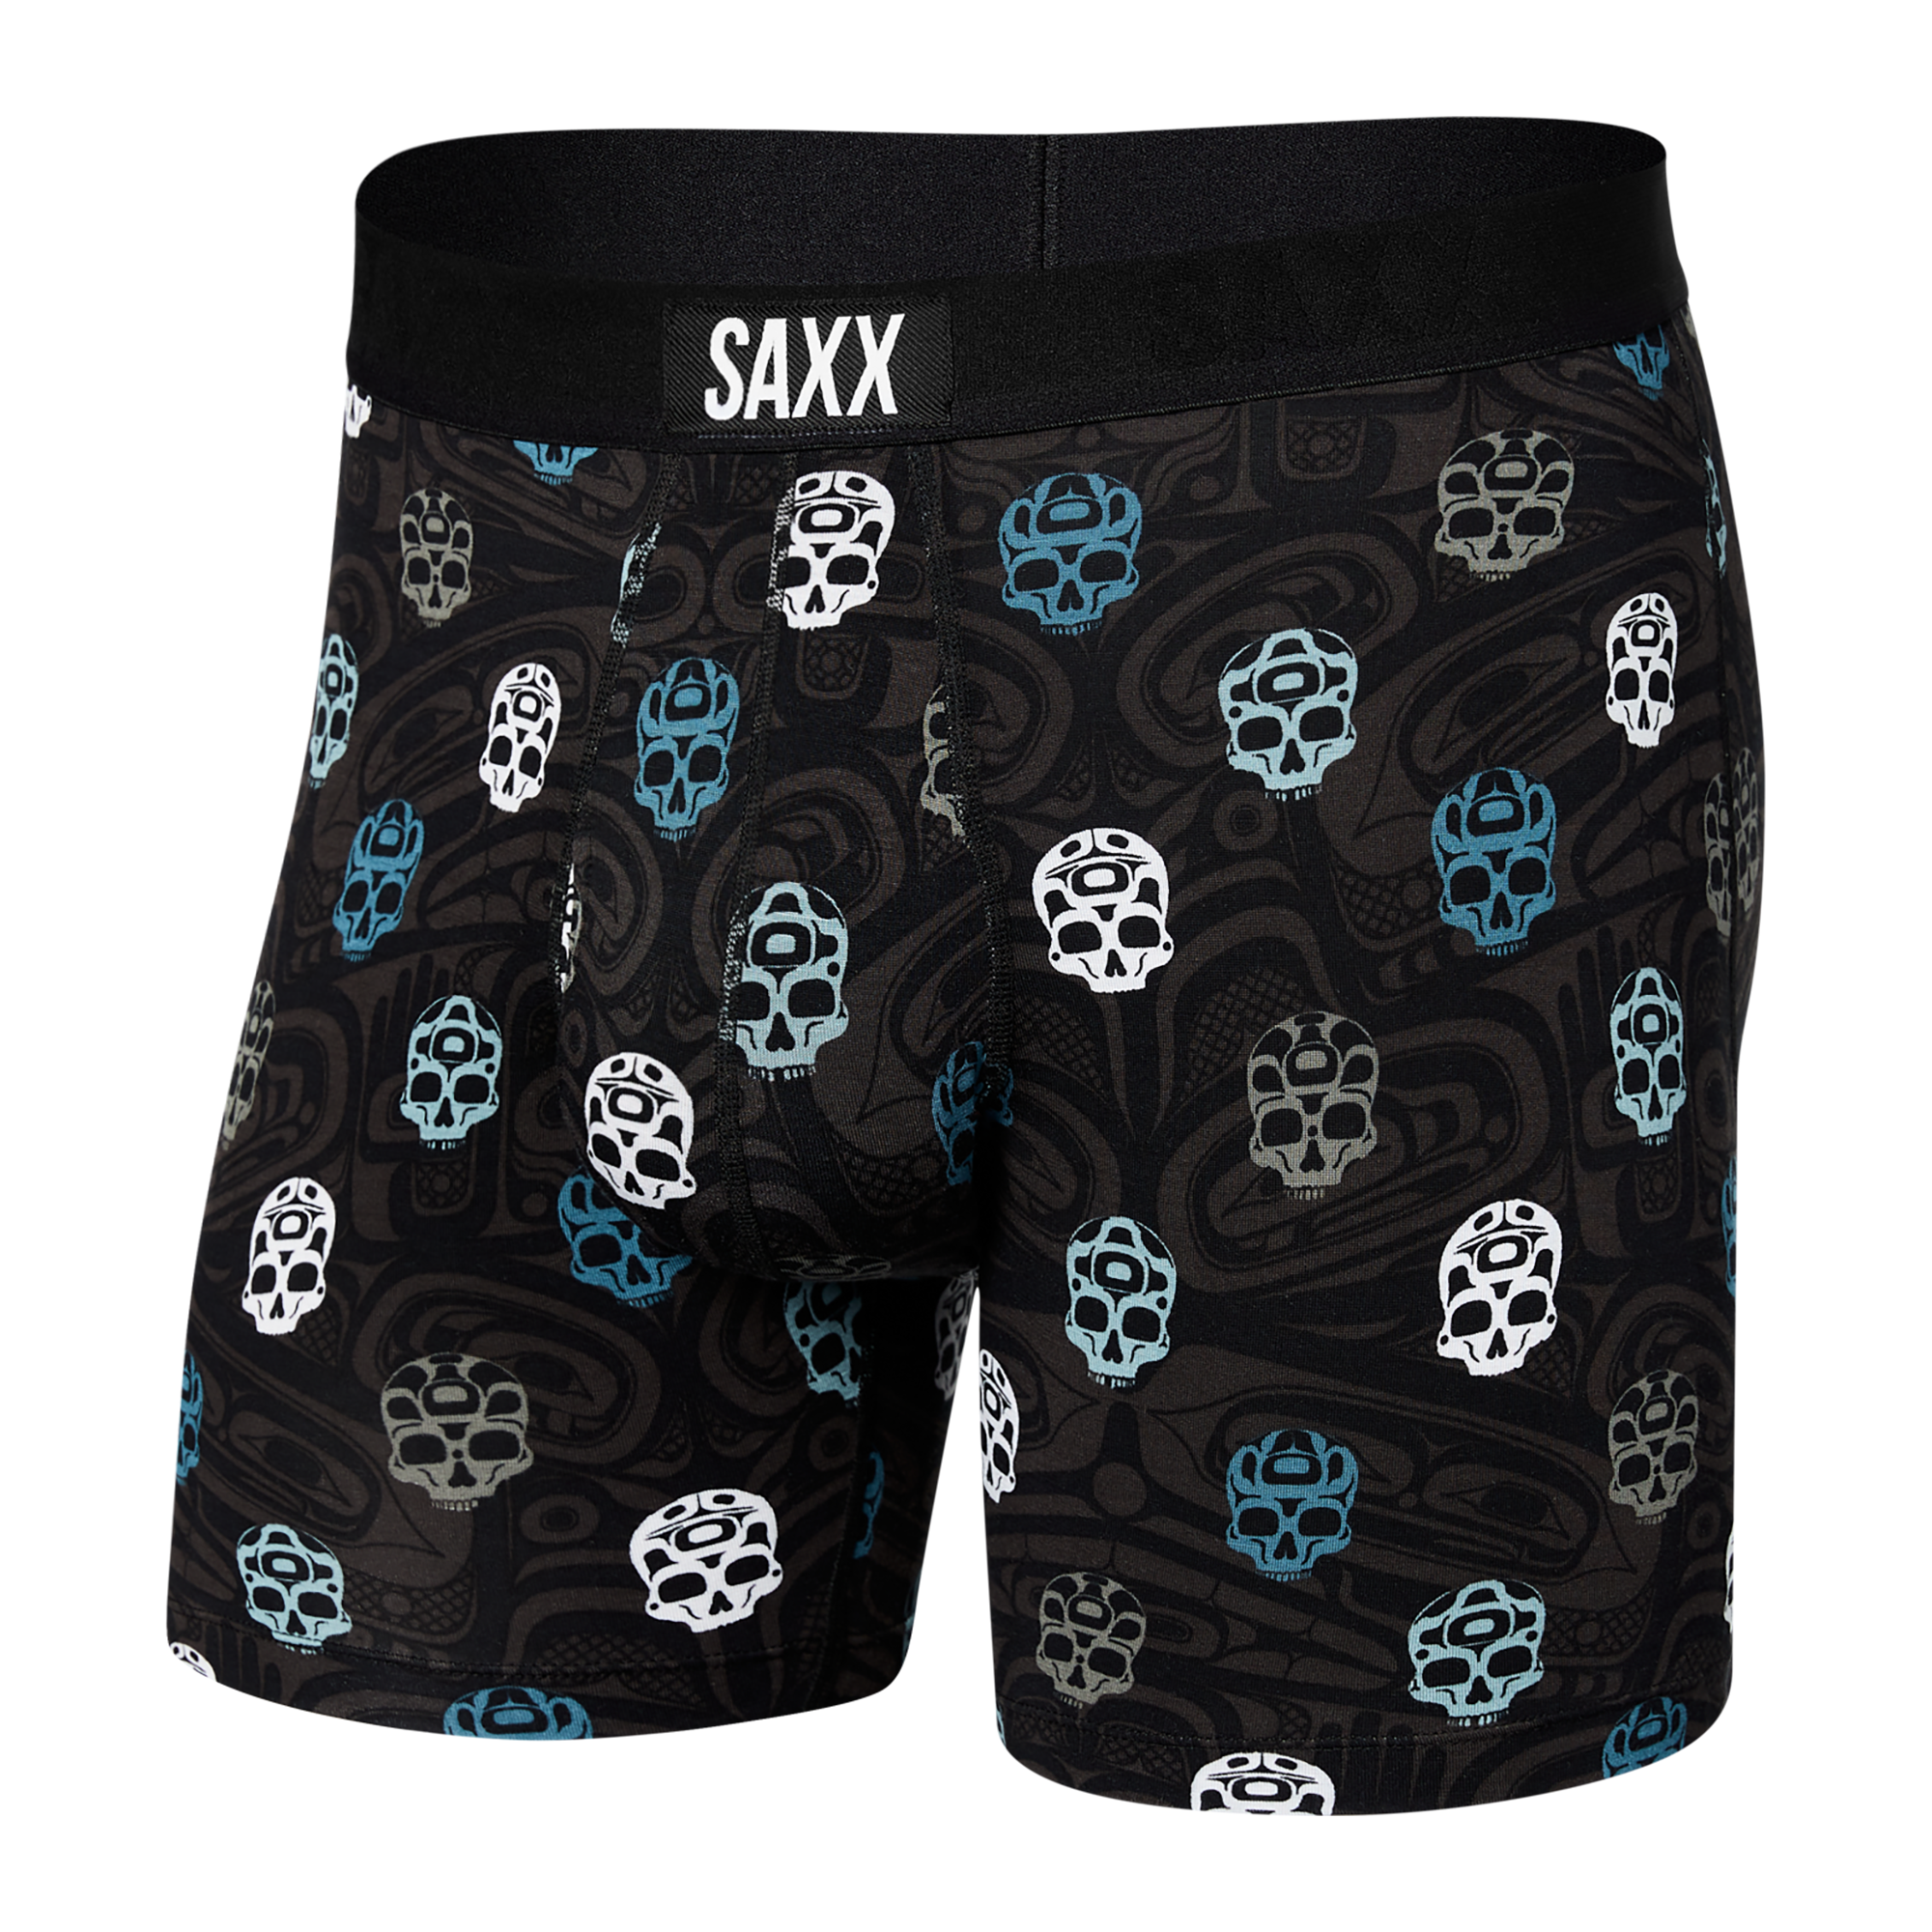 Men's, Saxx, SXBB30F, Ultra Boxer Brief